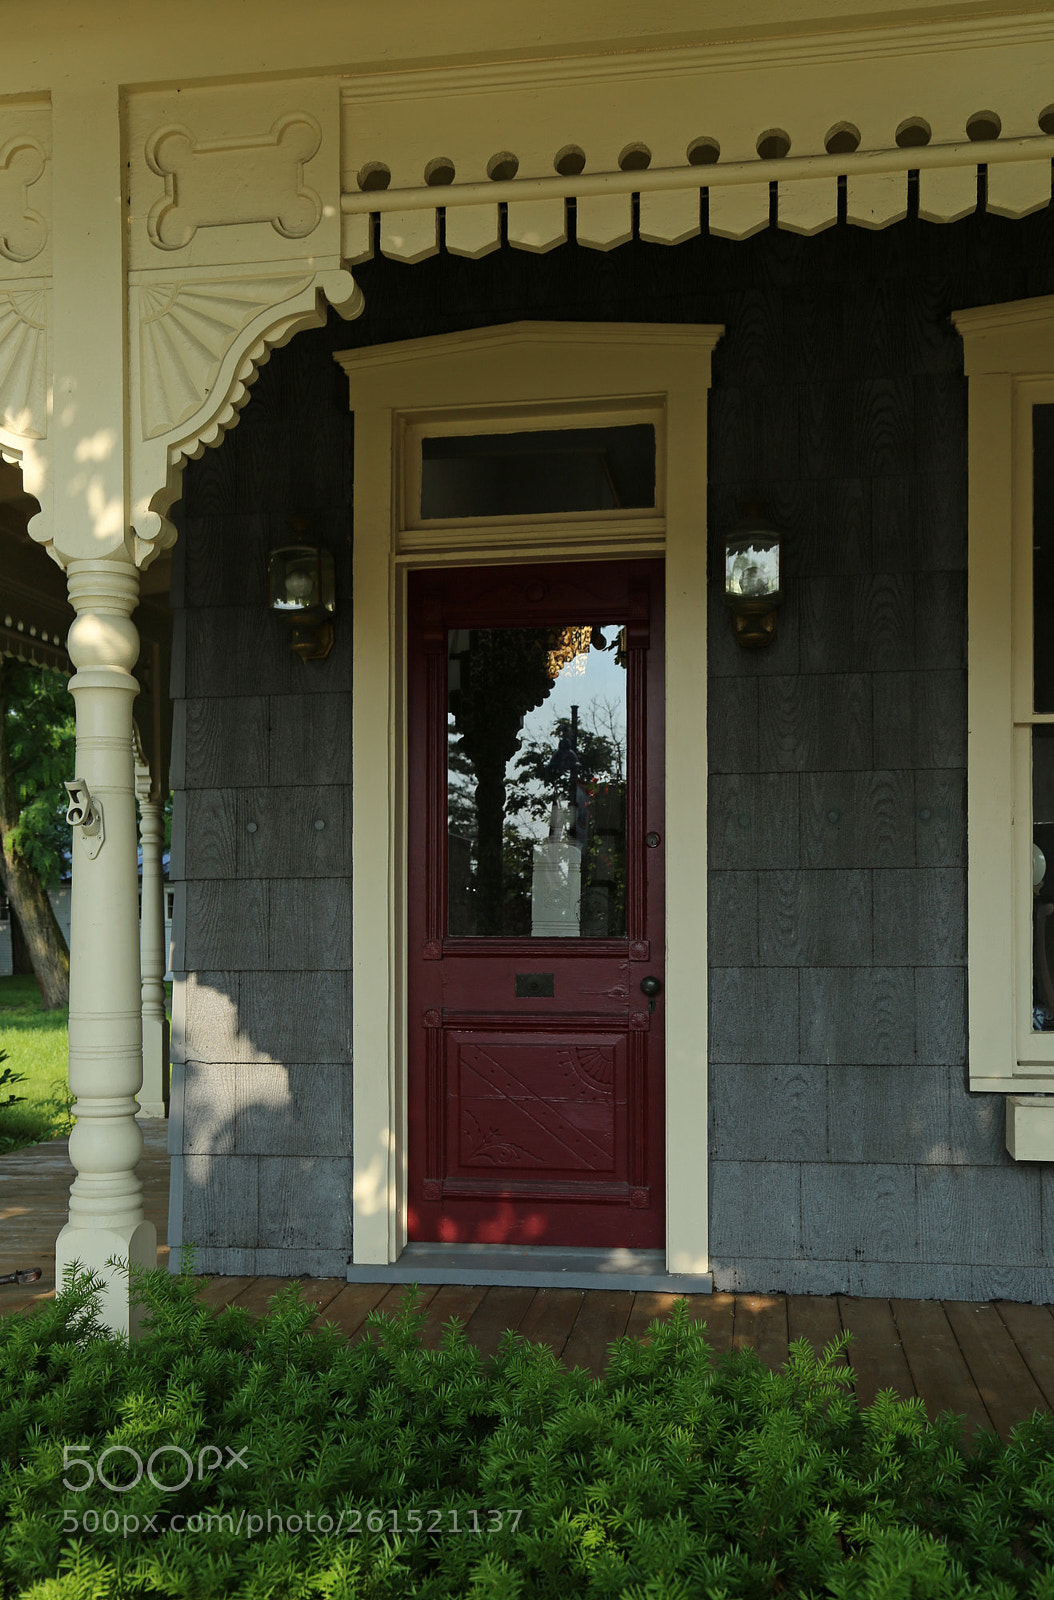 Canon EOS 6D sample photo. Doorway — powell, ohio photography